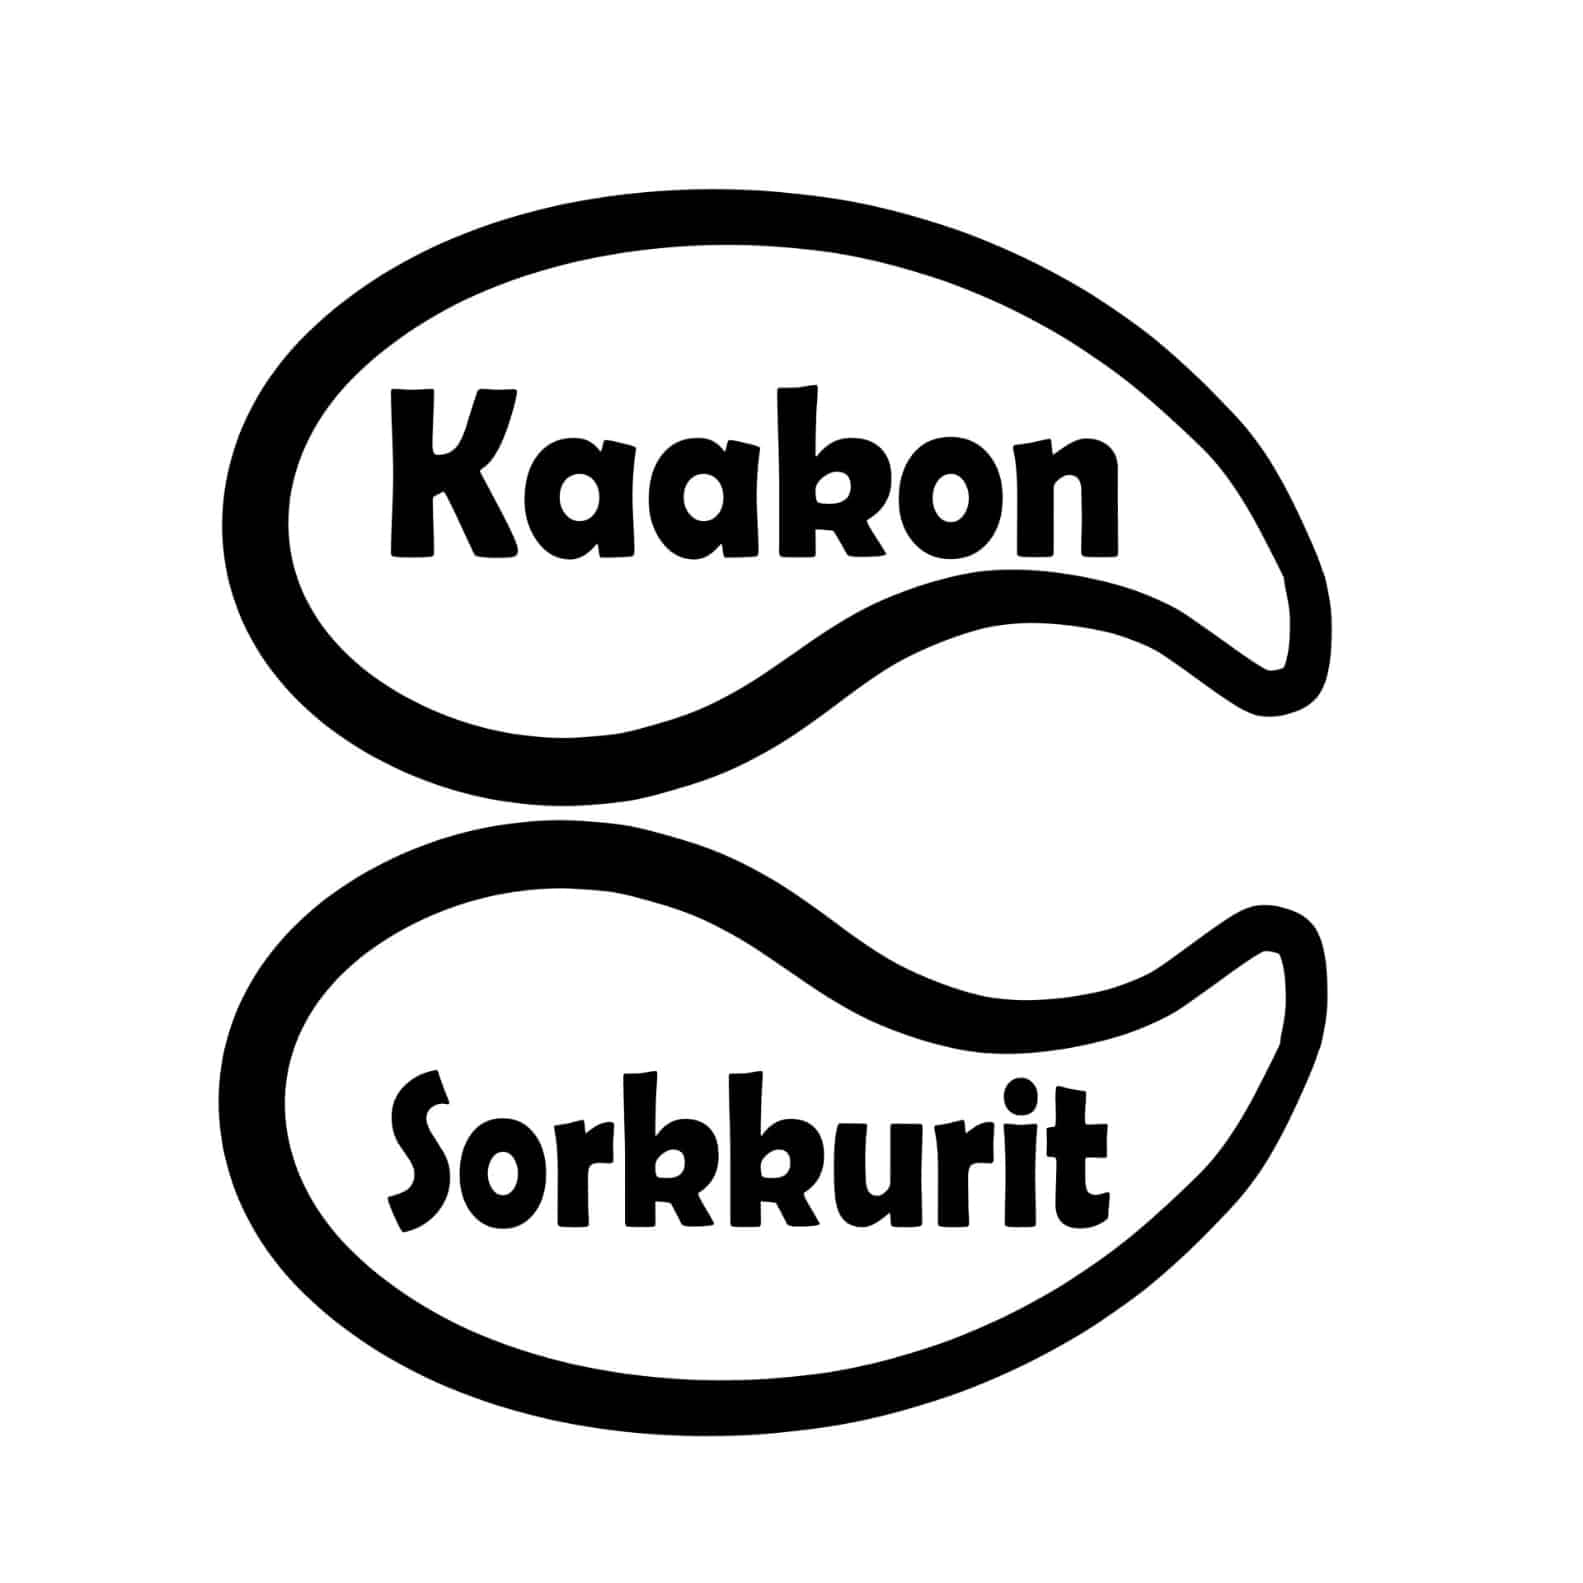 Kaakon Sorkkurit Oy